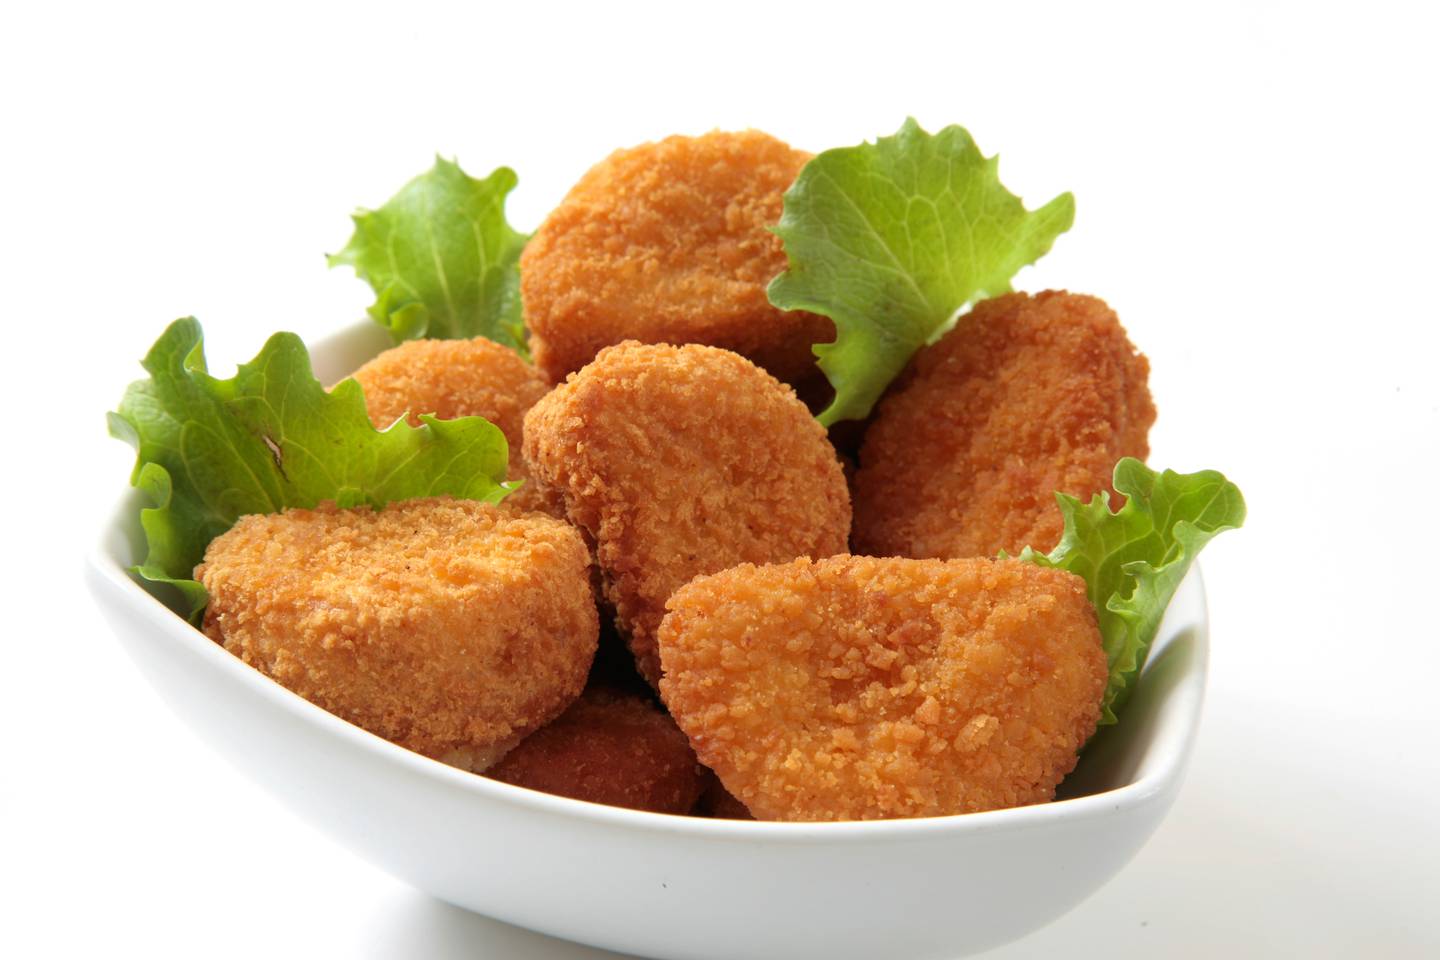 Los nuggets de pollo son pocos saludables debido a su alto contenido de grasas saturadas.